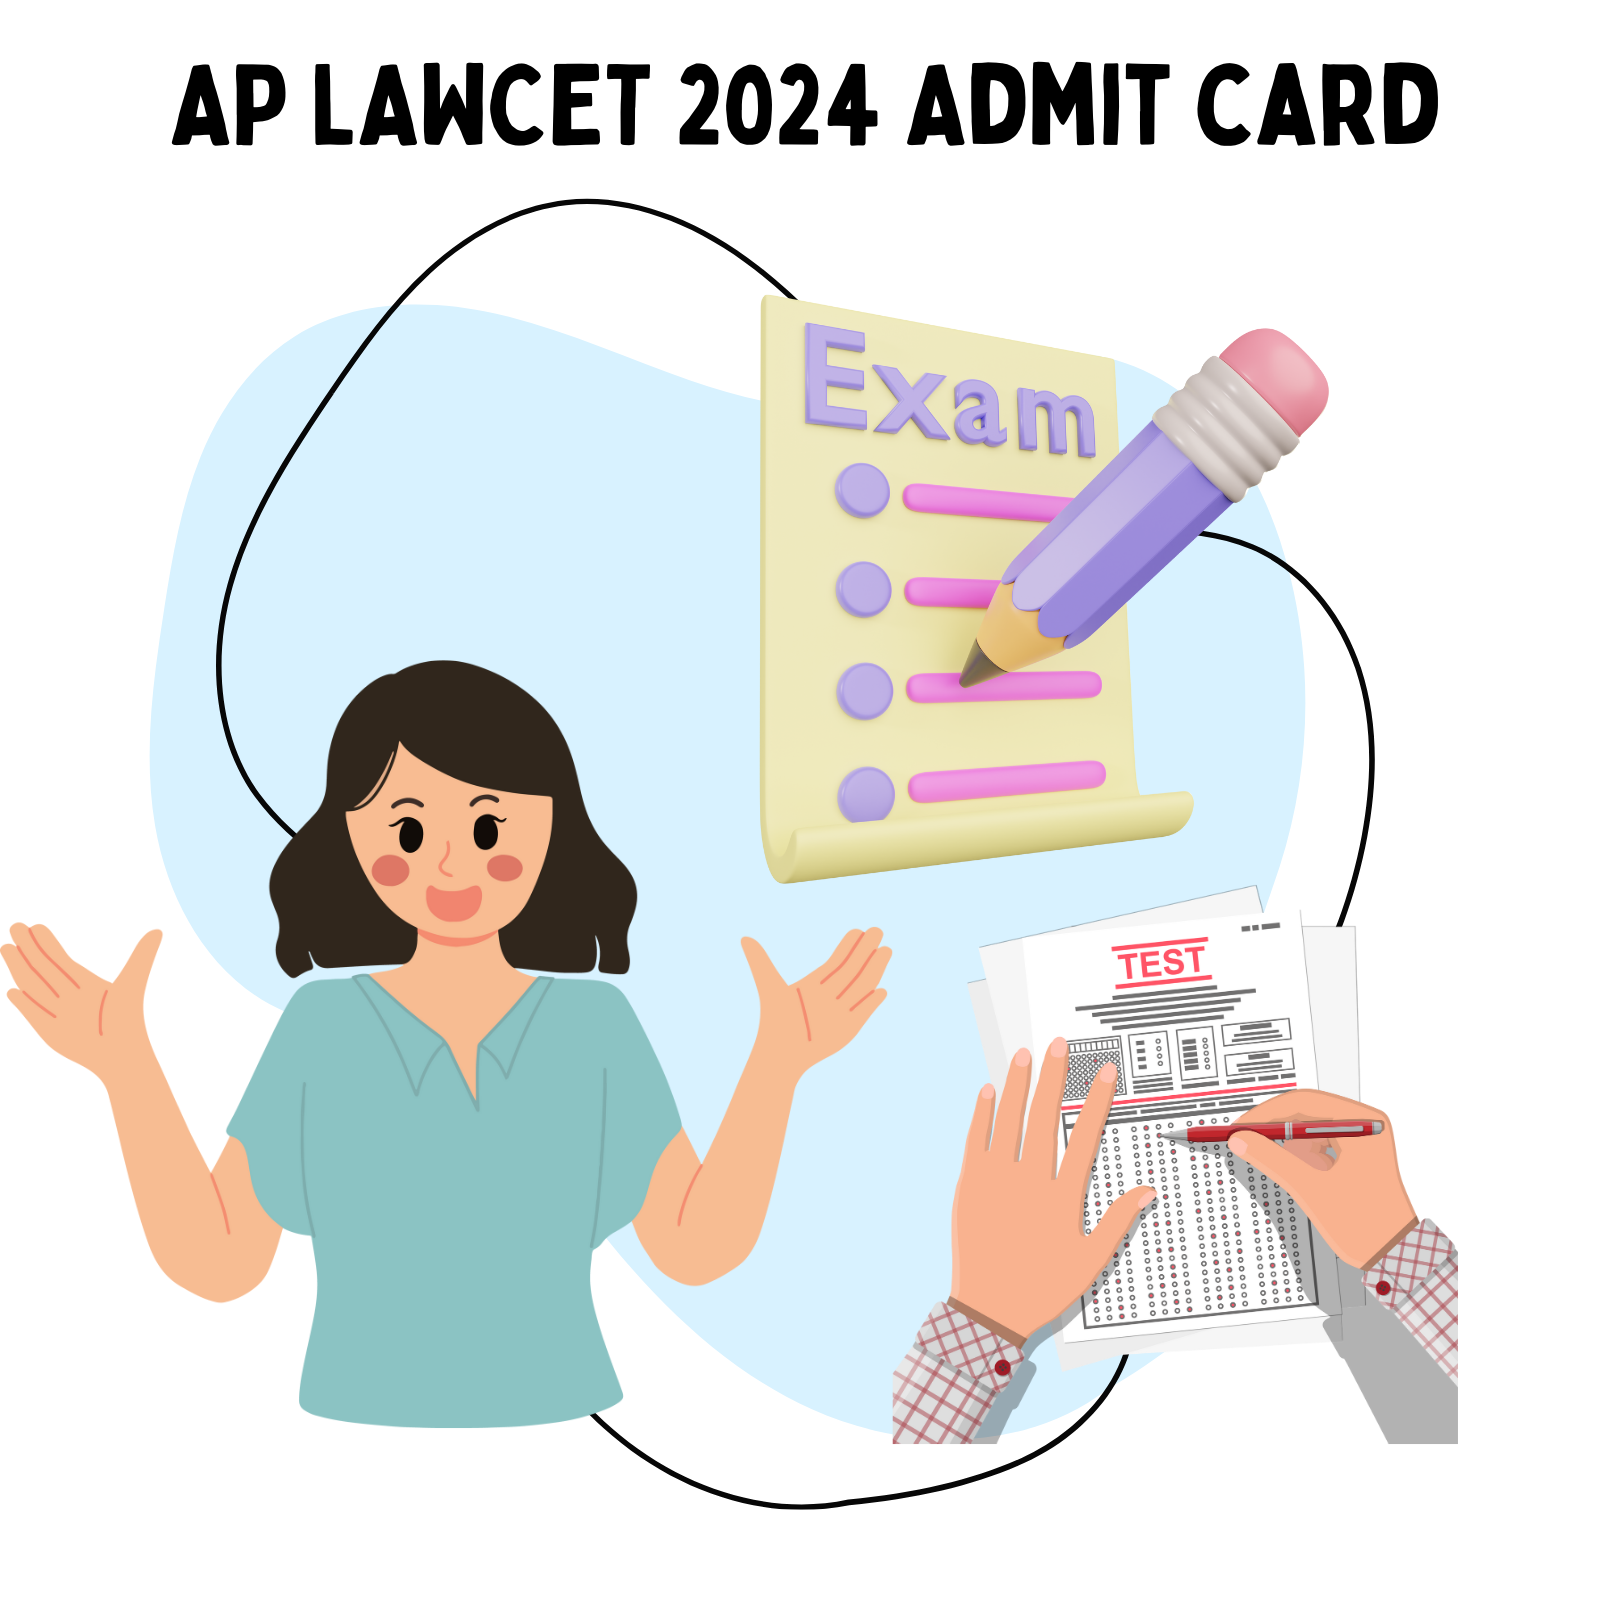 AP LAWCET 2024 Admit card 